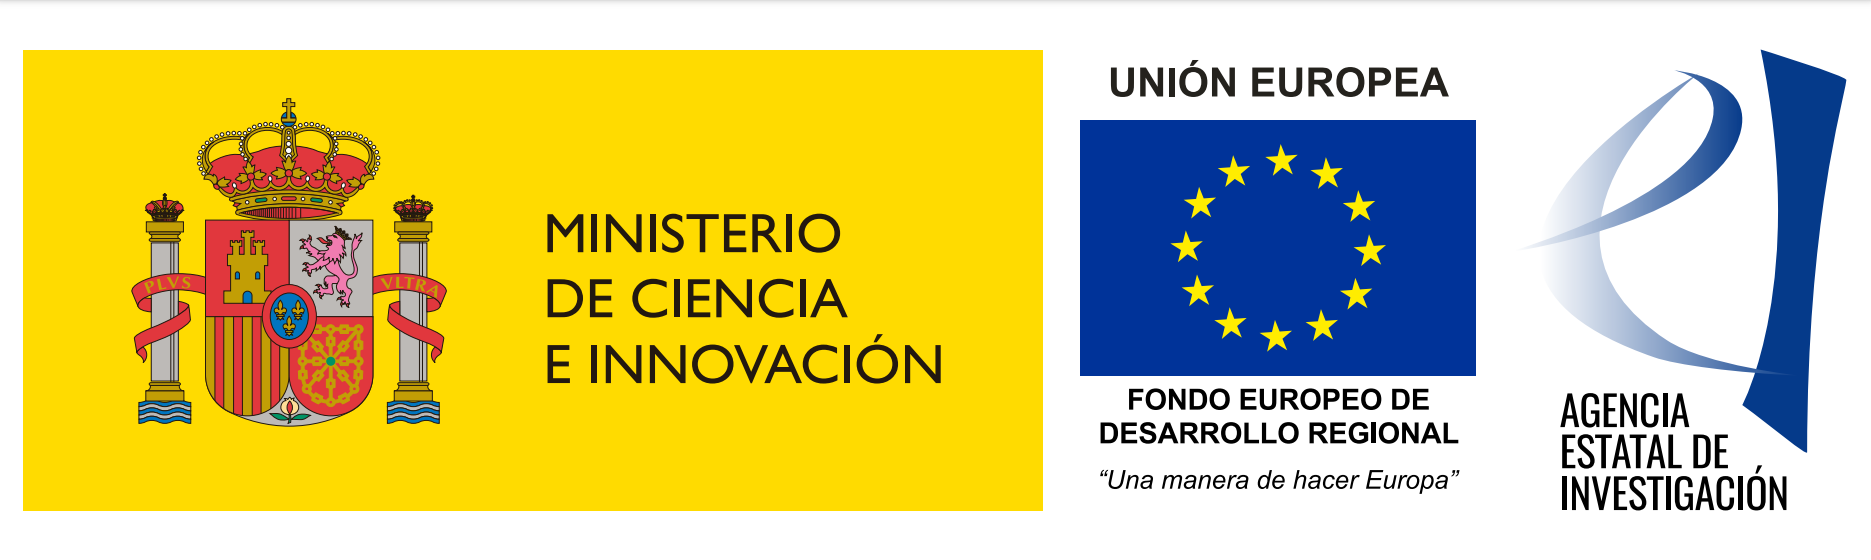 Ministerio de Ciencia e Innovación - Fondos FEDER - Agencia Estatal de Investigación